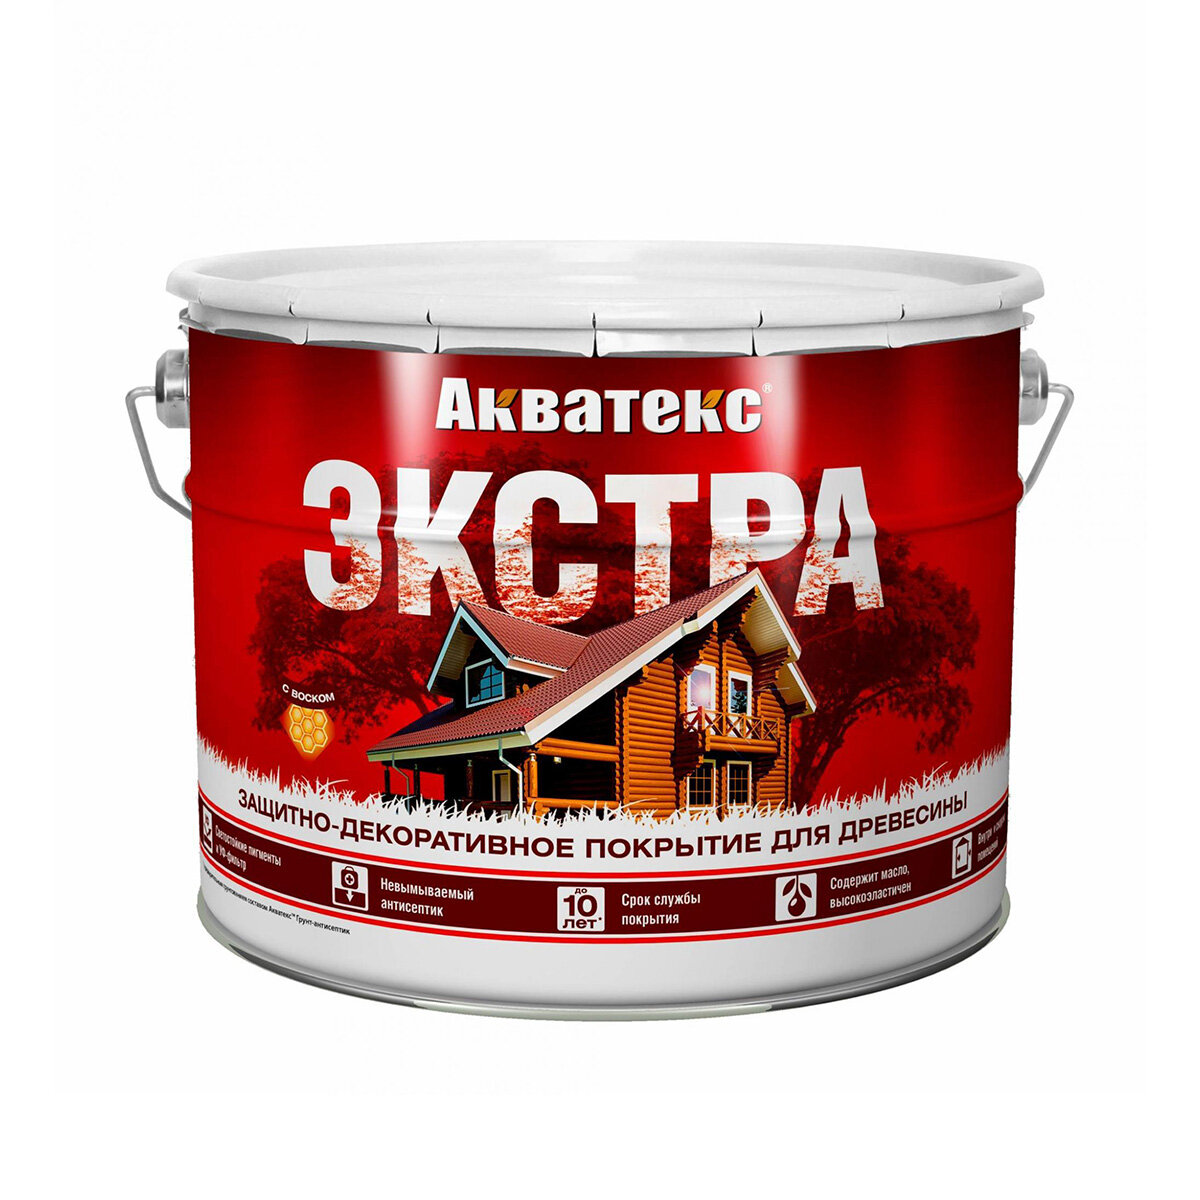 Акватекс Акватекс-Экстра защитно-декоративное покрытие для древесины алкидное полуглянцевое орех 9л